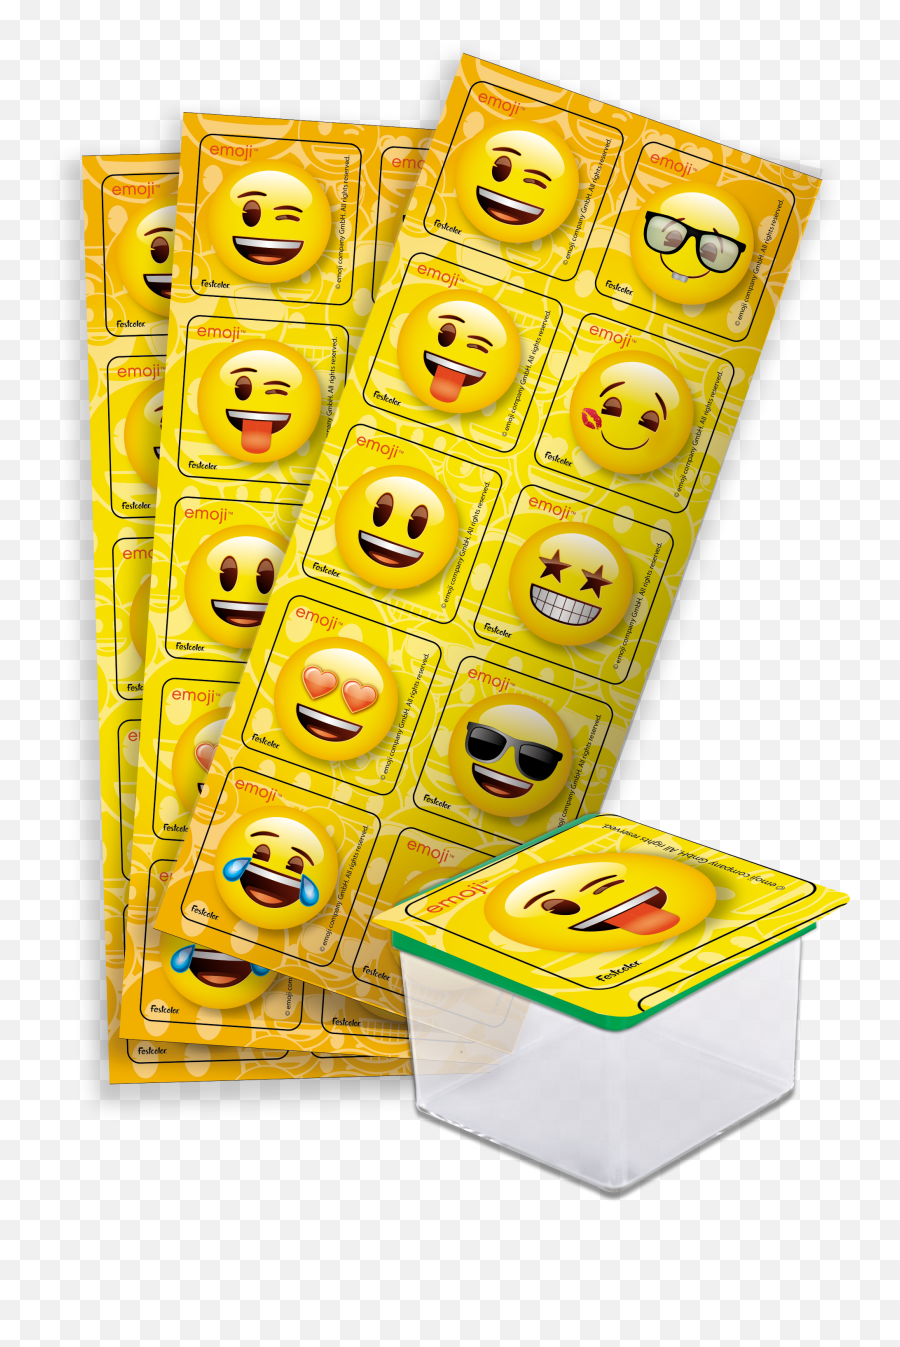 Festcolor - Sua Melhor Festa Emoji,Tnt Emoji